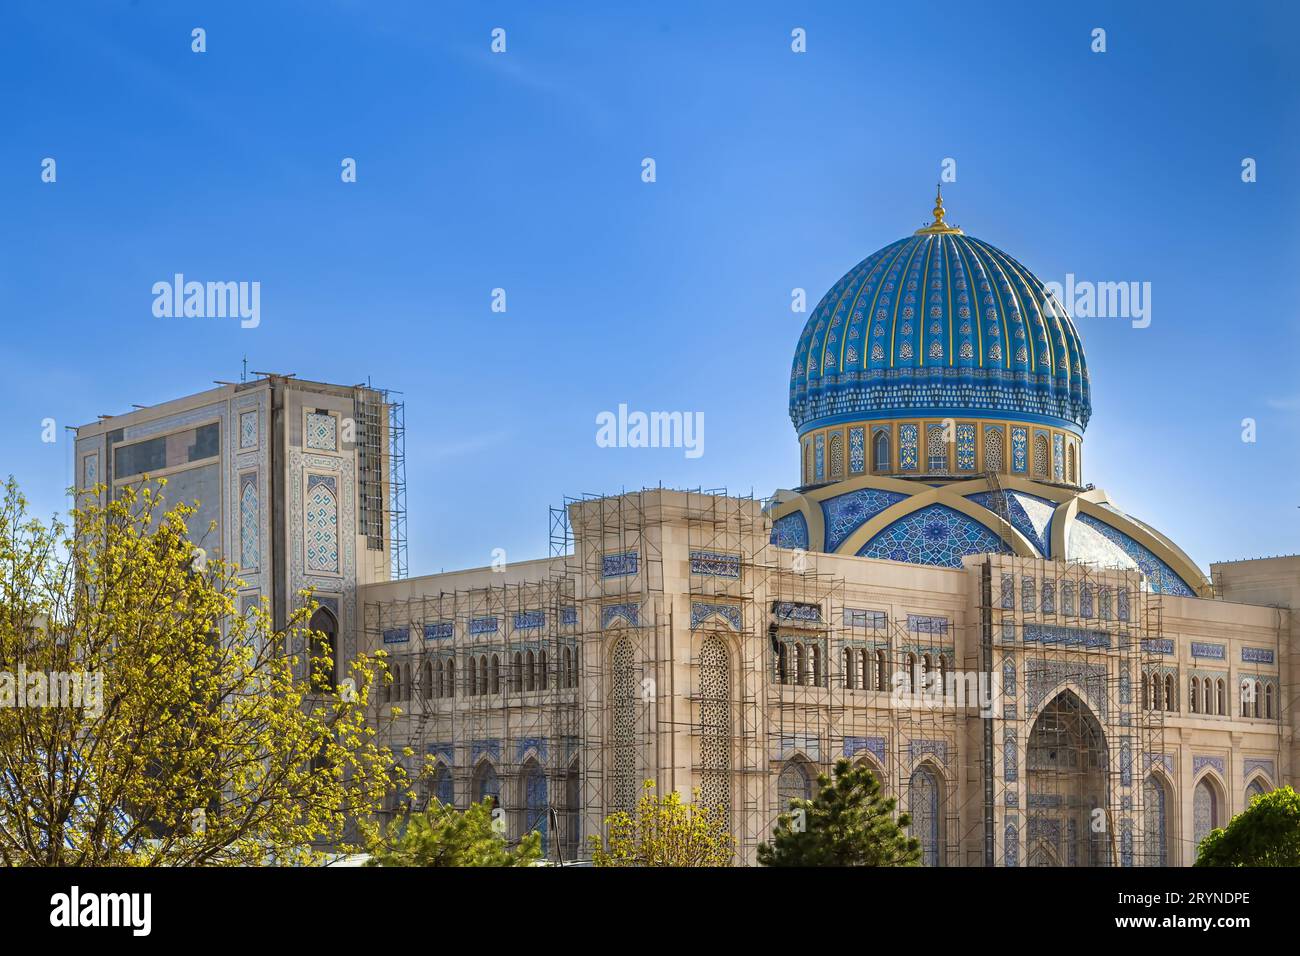 Centre de civilisation islamique, Tachkent, Ouzbékistan Banque D'Images